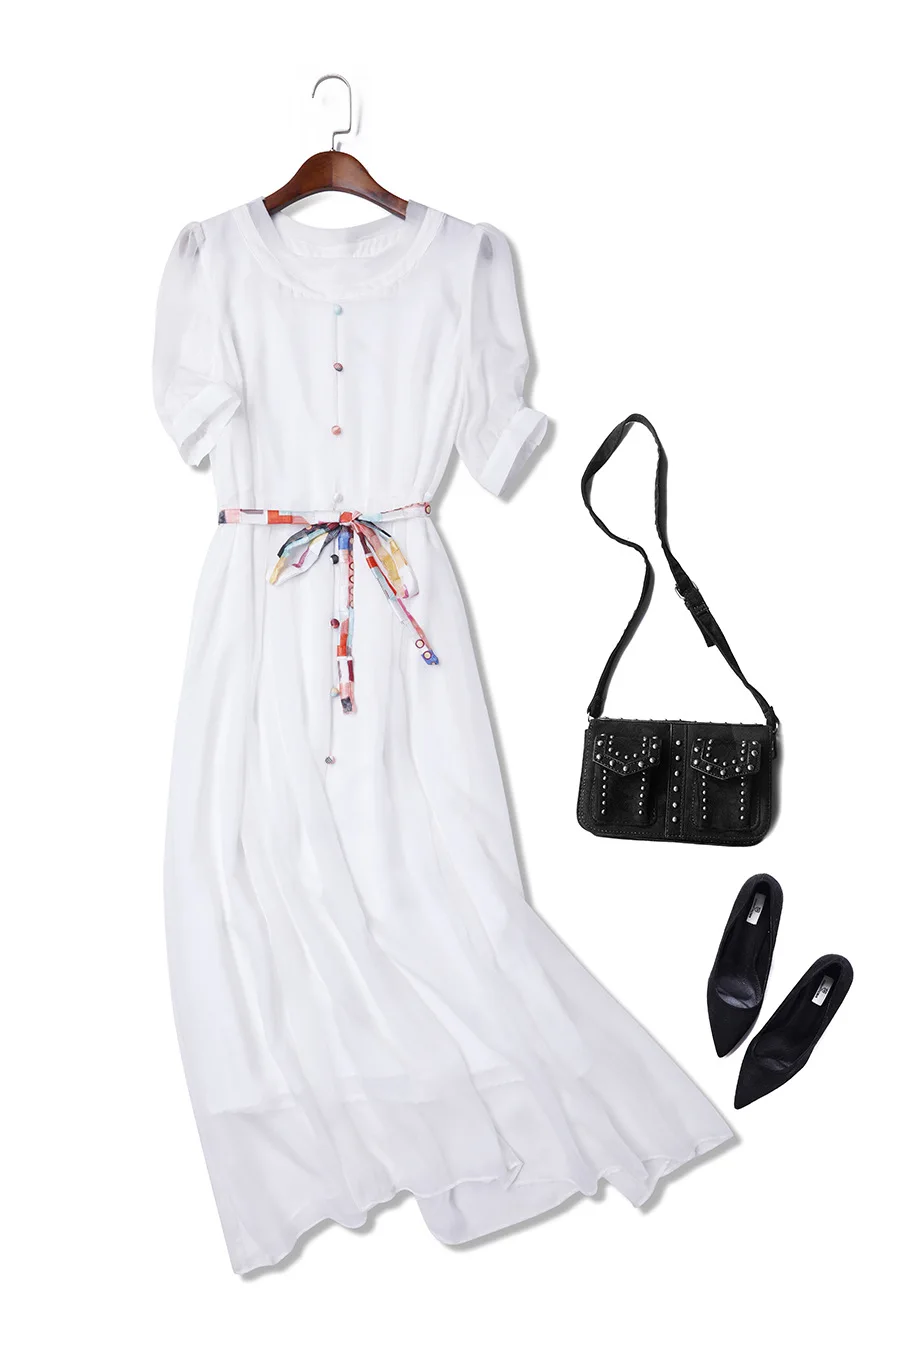 Tcyeek летнее платье для девушек натуральный шелк платья Женская одежда корейское Бохо белое длинное платье повседневное элегантное Vestidos 0368